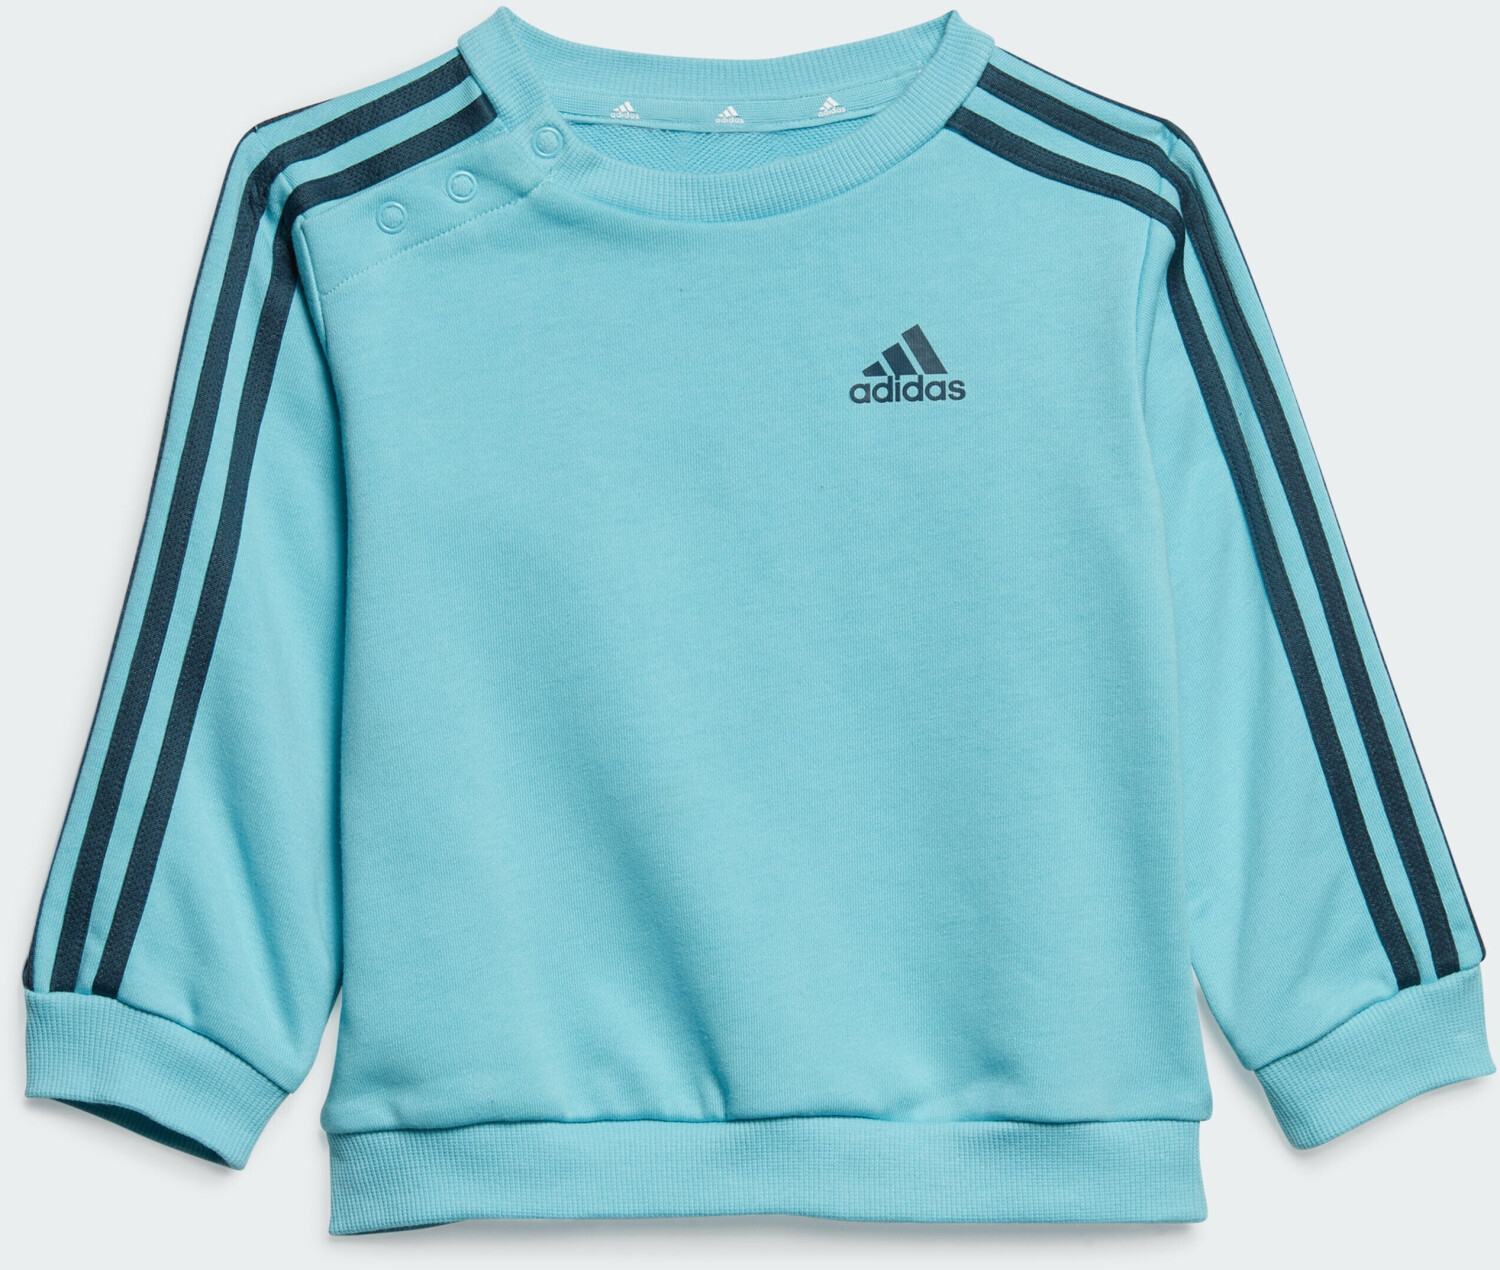 Adidas Kids Essentials 3-Stripes Kids Jogginganzug Light aqua/arctic night  (IJ6340) ab 30,49 € | Preisvergleich bei